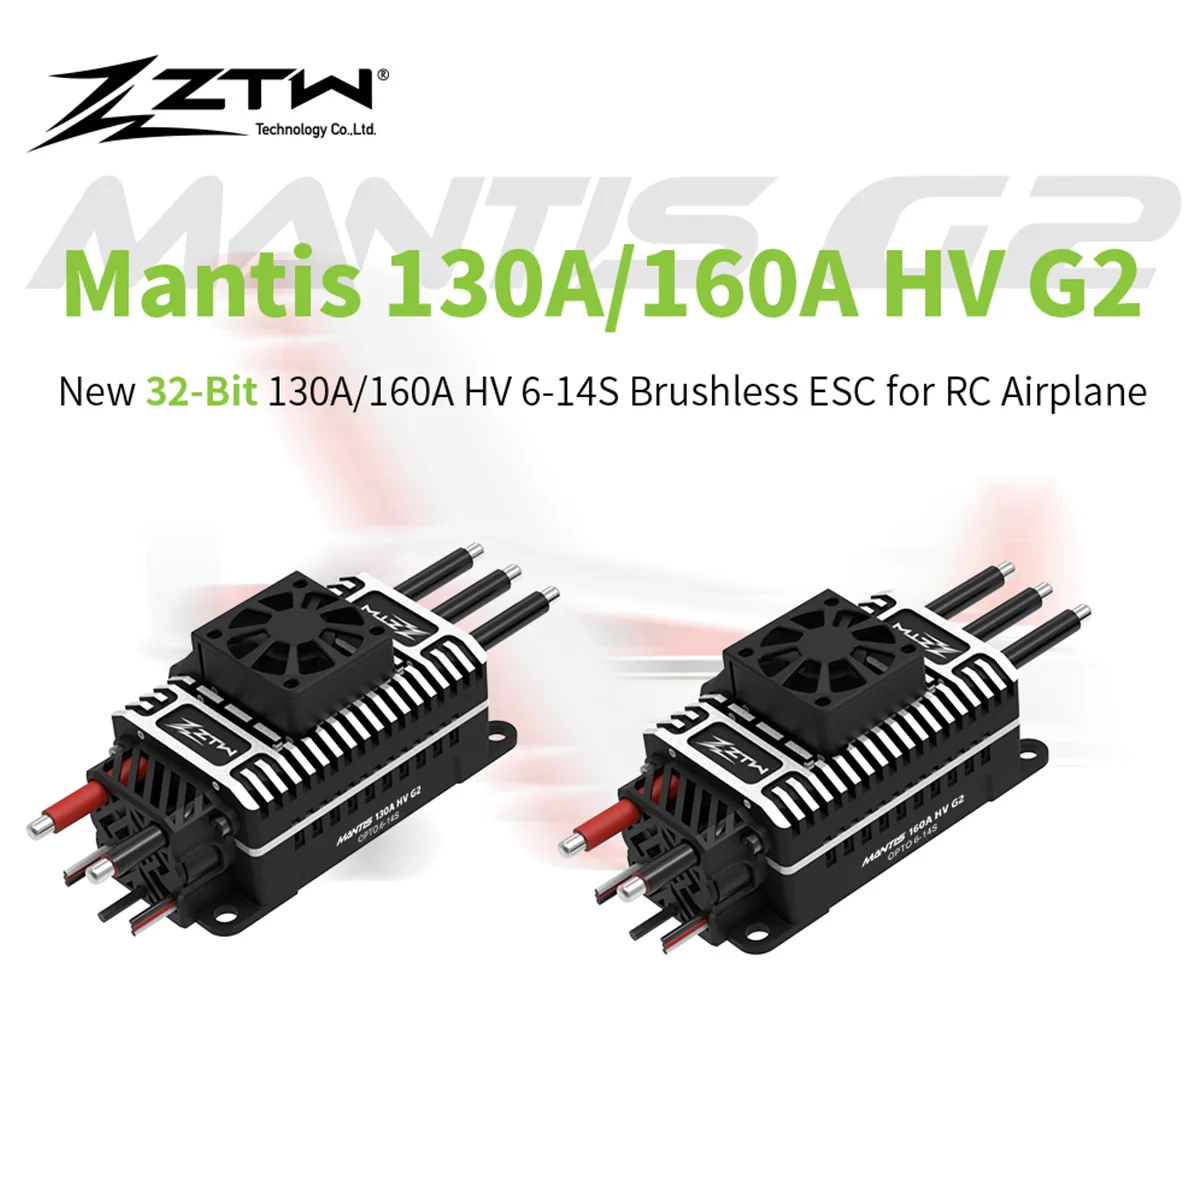 Обновленный 32-битный контроллер скорости ZTW Mantis G2 130A/160A HV ESC 6-14S для стандартного привода струйного вентилятора EDF с фиксированным крылом